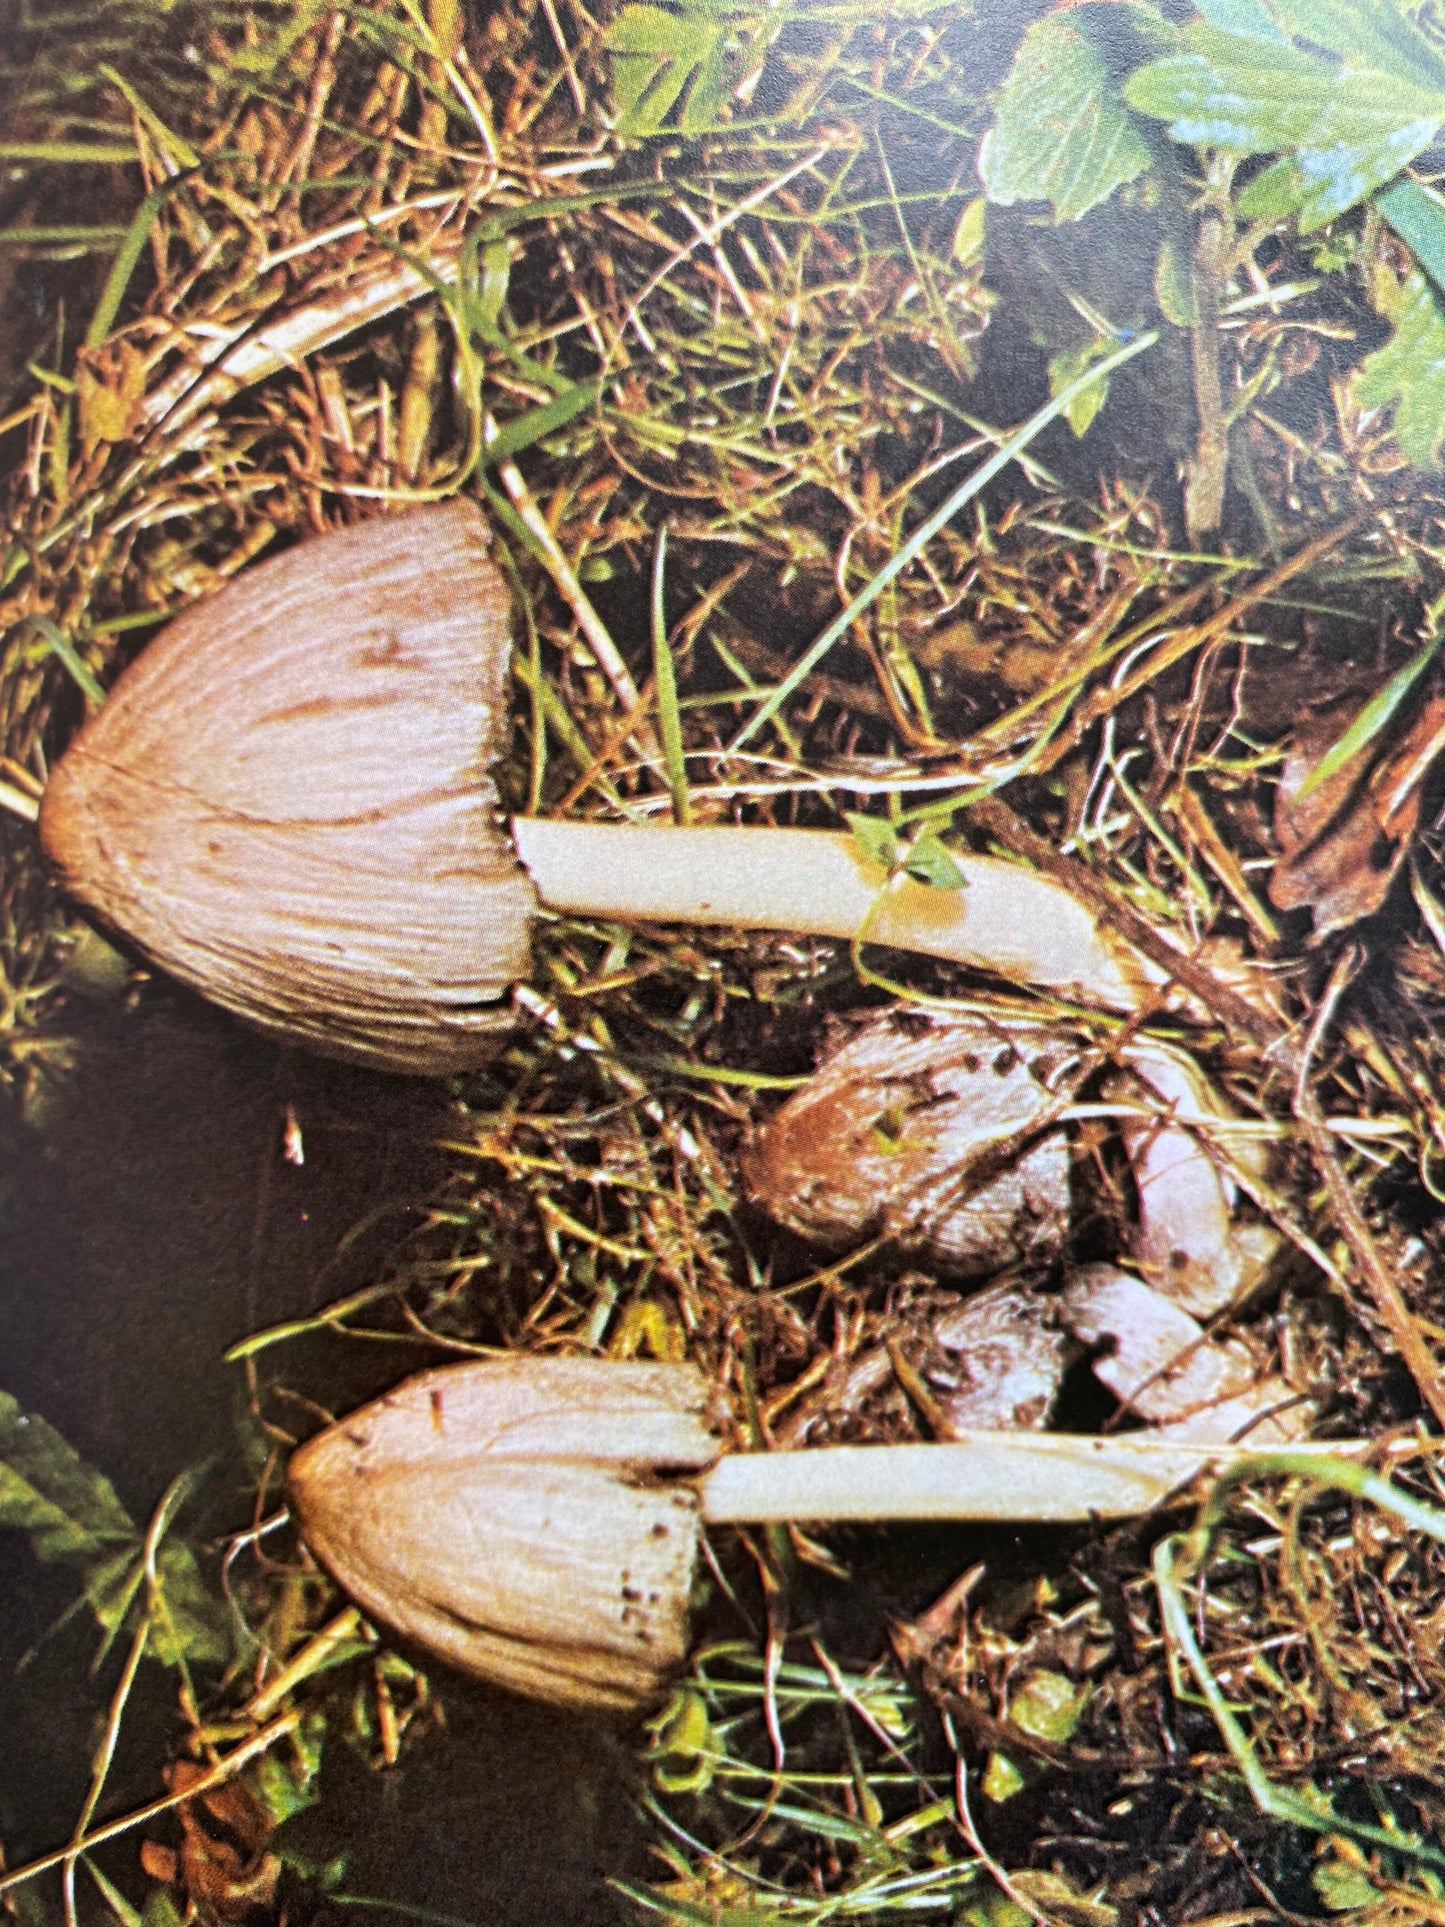 Michael Jordan - A Guide To Mushrooms (1975)